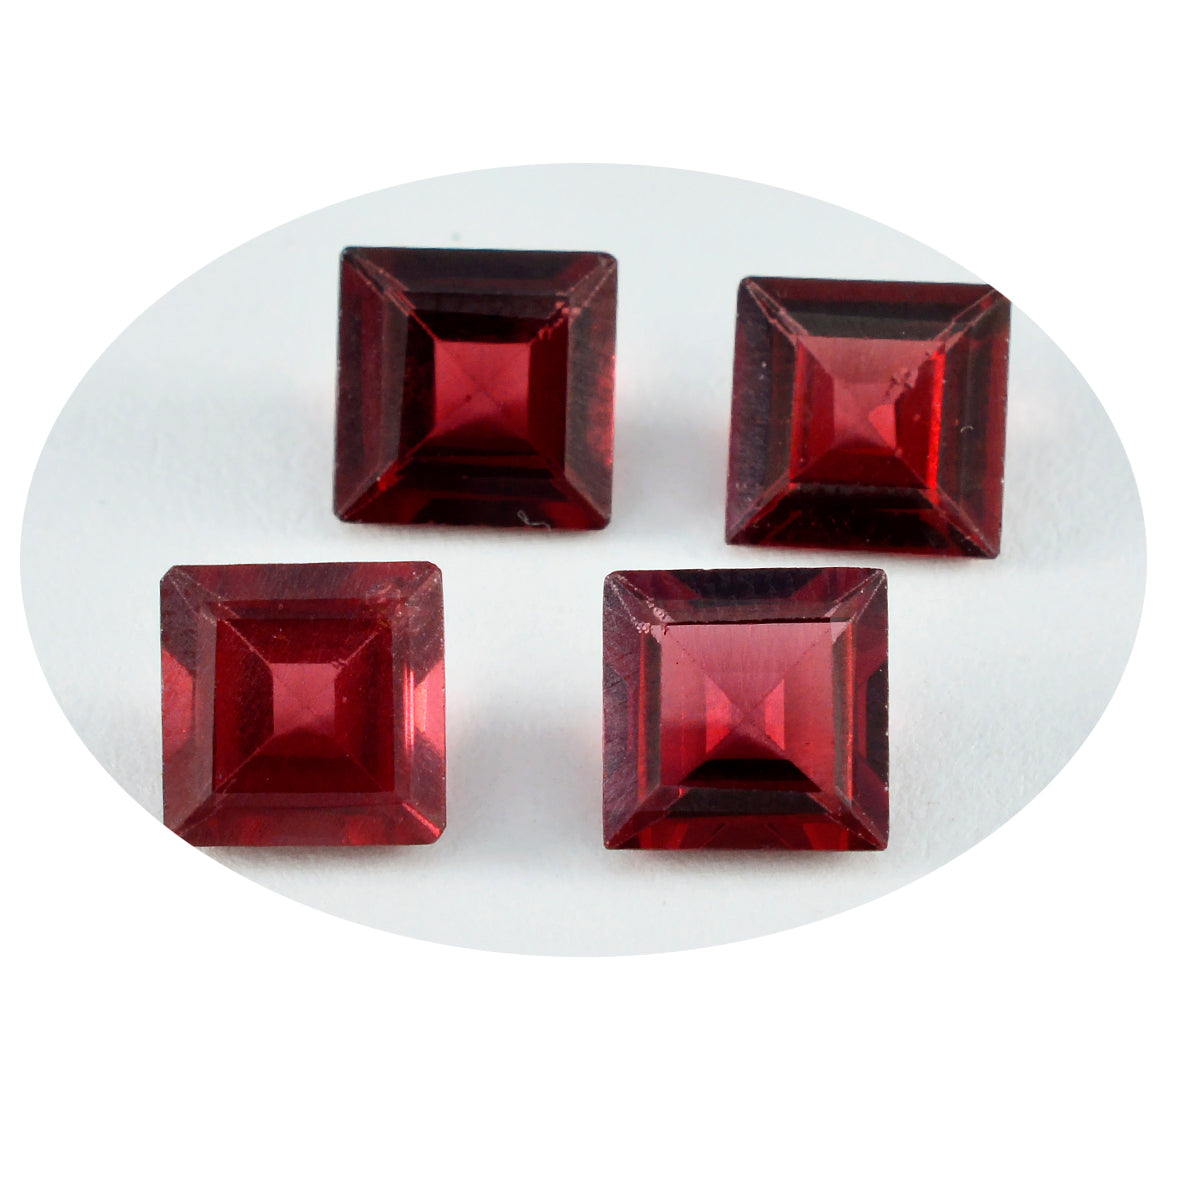 Riyogems, 1 pieza, granate rojo auténtico facetado, 9x9mm, forma cuadrada, gema suelta de buena calidad